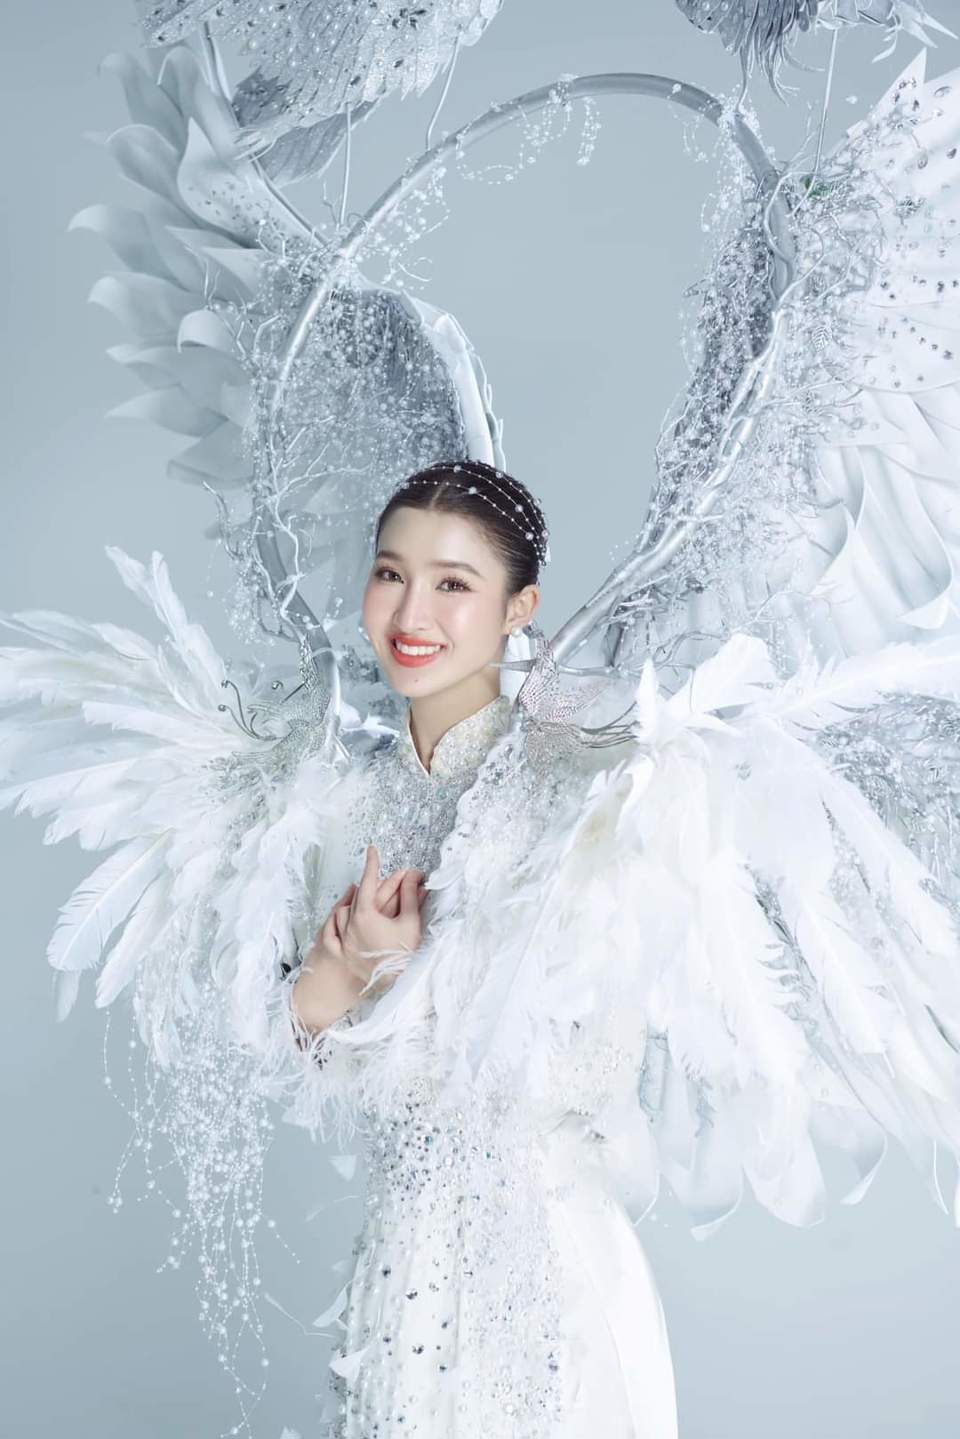 Á hậu Phương Nhi mang "Cò ơi" đi thi Miss International Hoa hậu Quốc tế 2023 - Ảnh 2